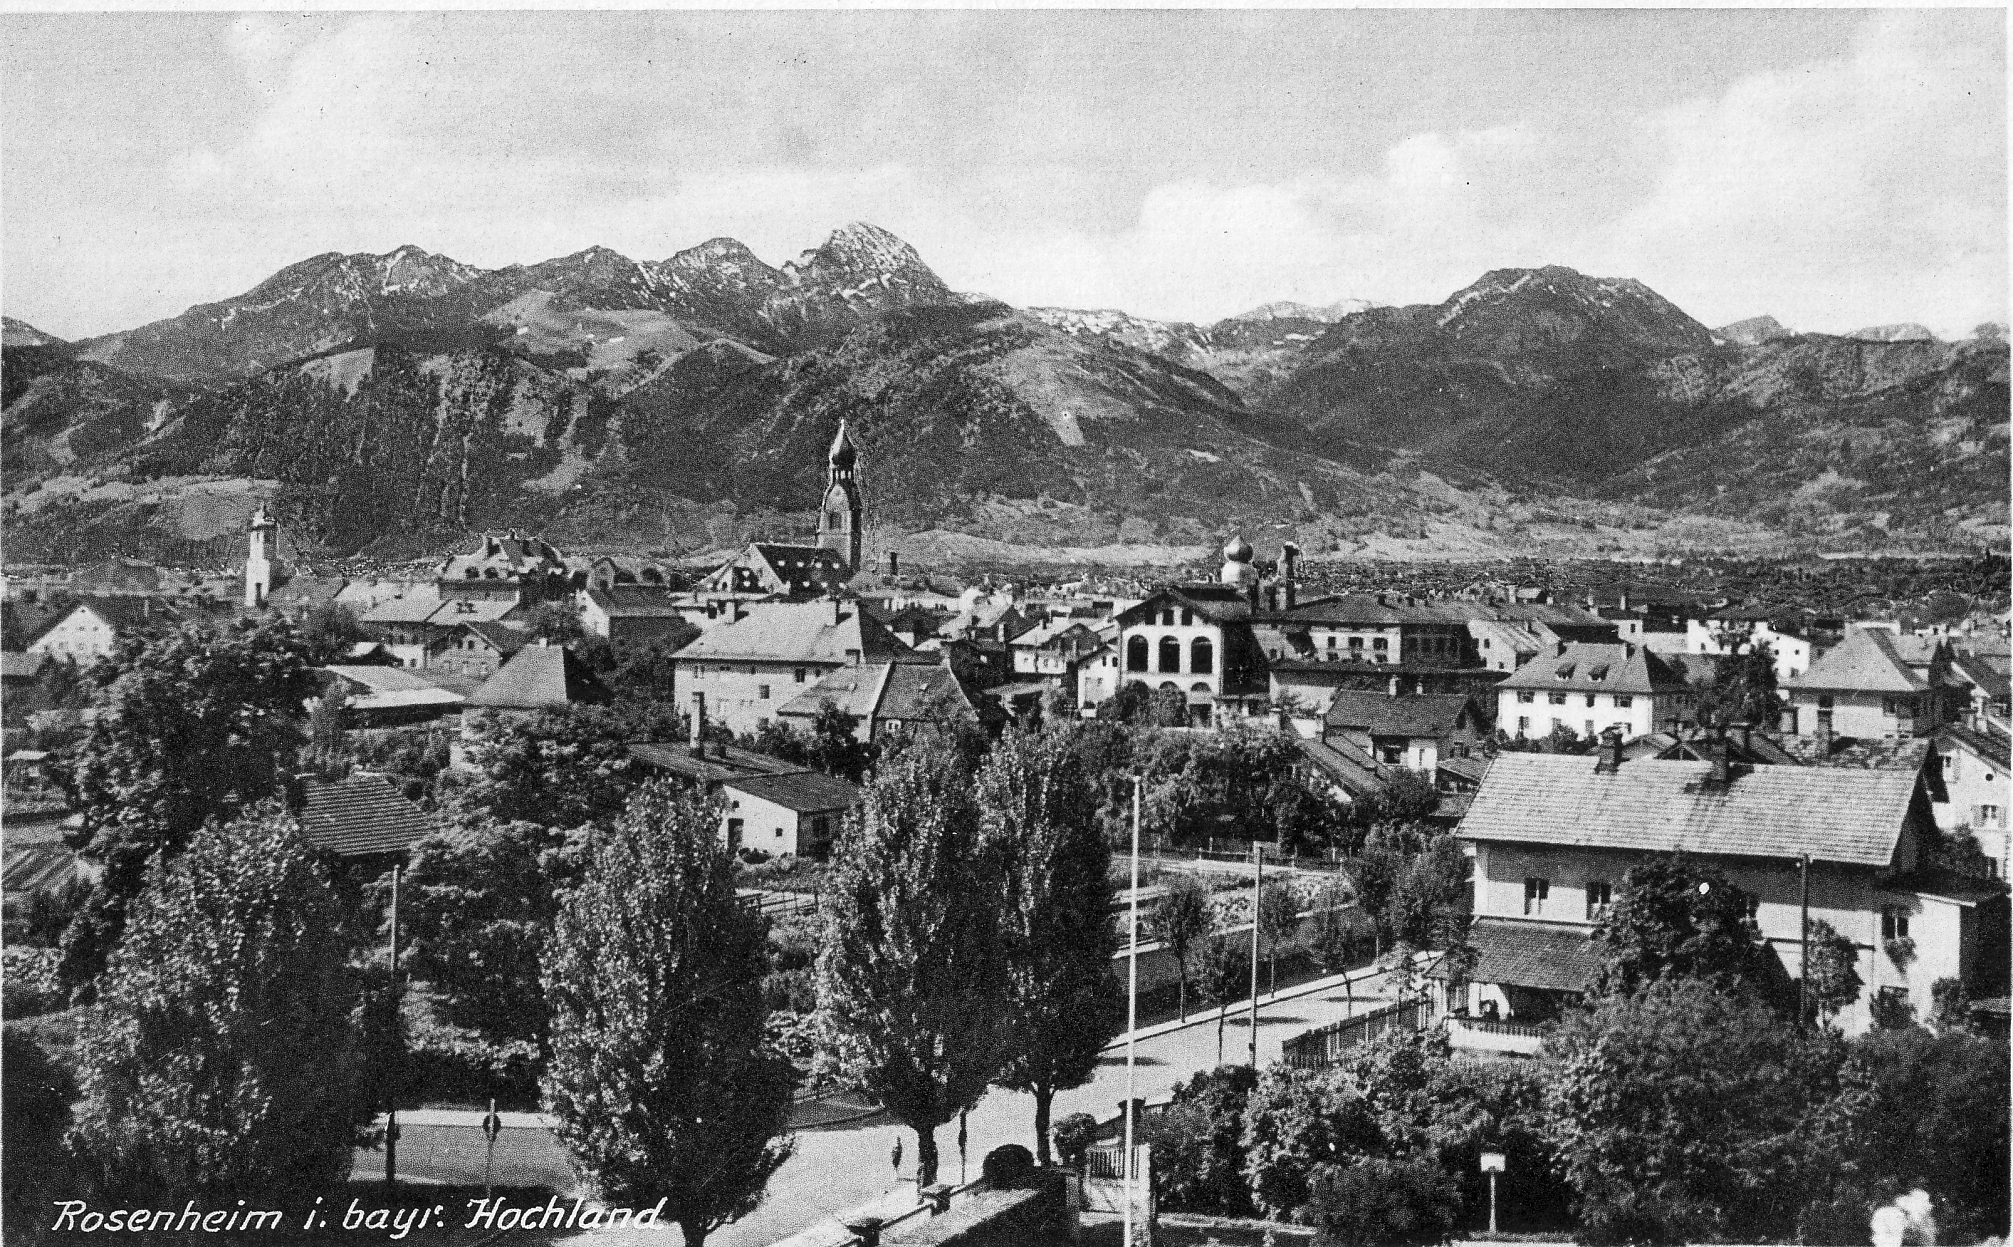 Ellmaierstraße in Rosenheim im Jahr 1940. Foto: Archiv Herbert Borrmann